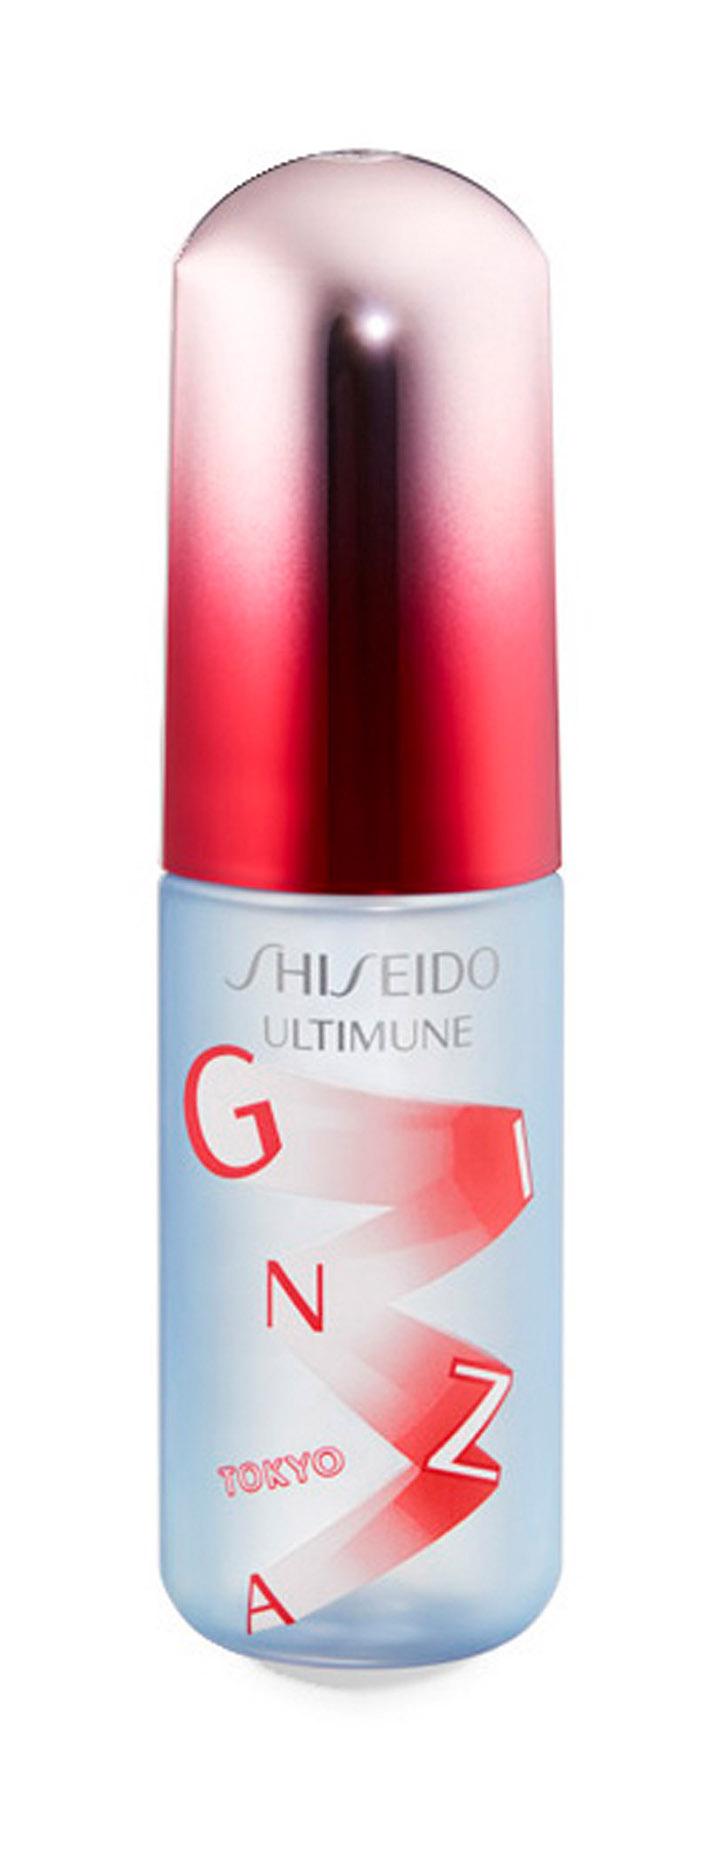 Освежающий мист для лица Shiseido Ultimune Defense Refresh Mist Duo защитный, 60 мл